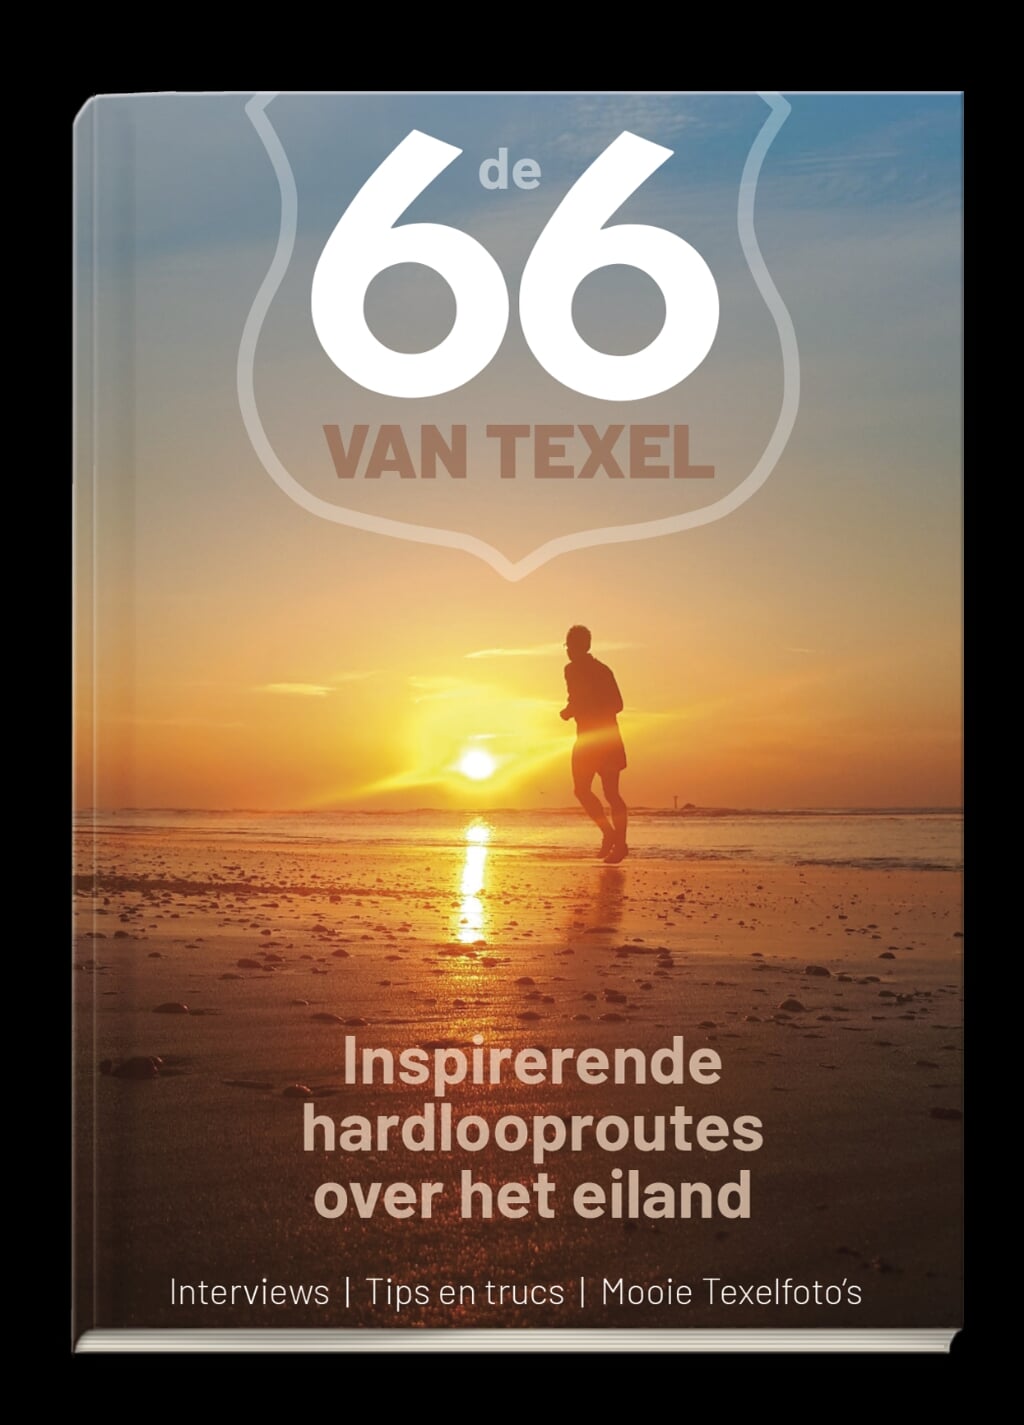 Uitsnede van de omslag van "De 66 van Texel". 